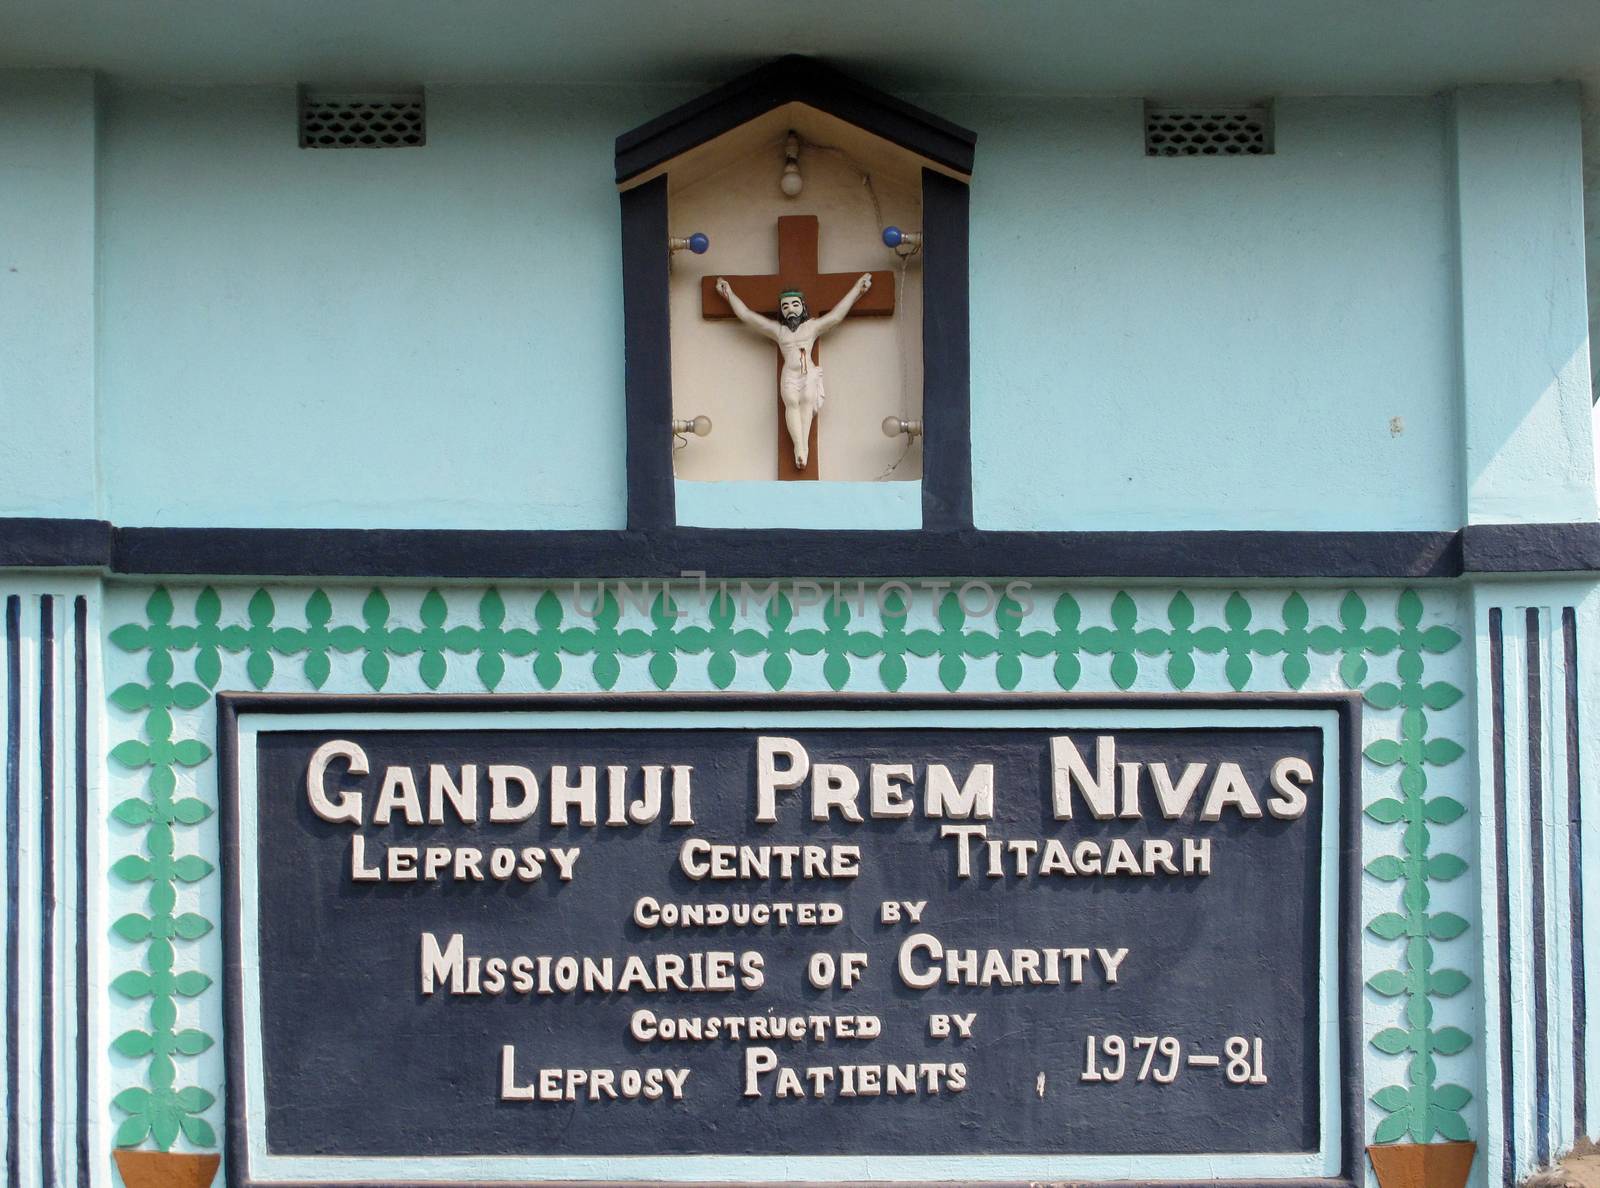 Gandhiji Prem Nivas( Leprosy centre) in Titagarh, India by atlas